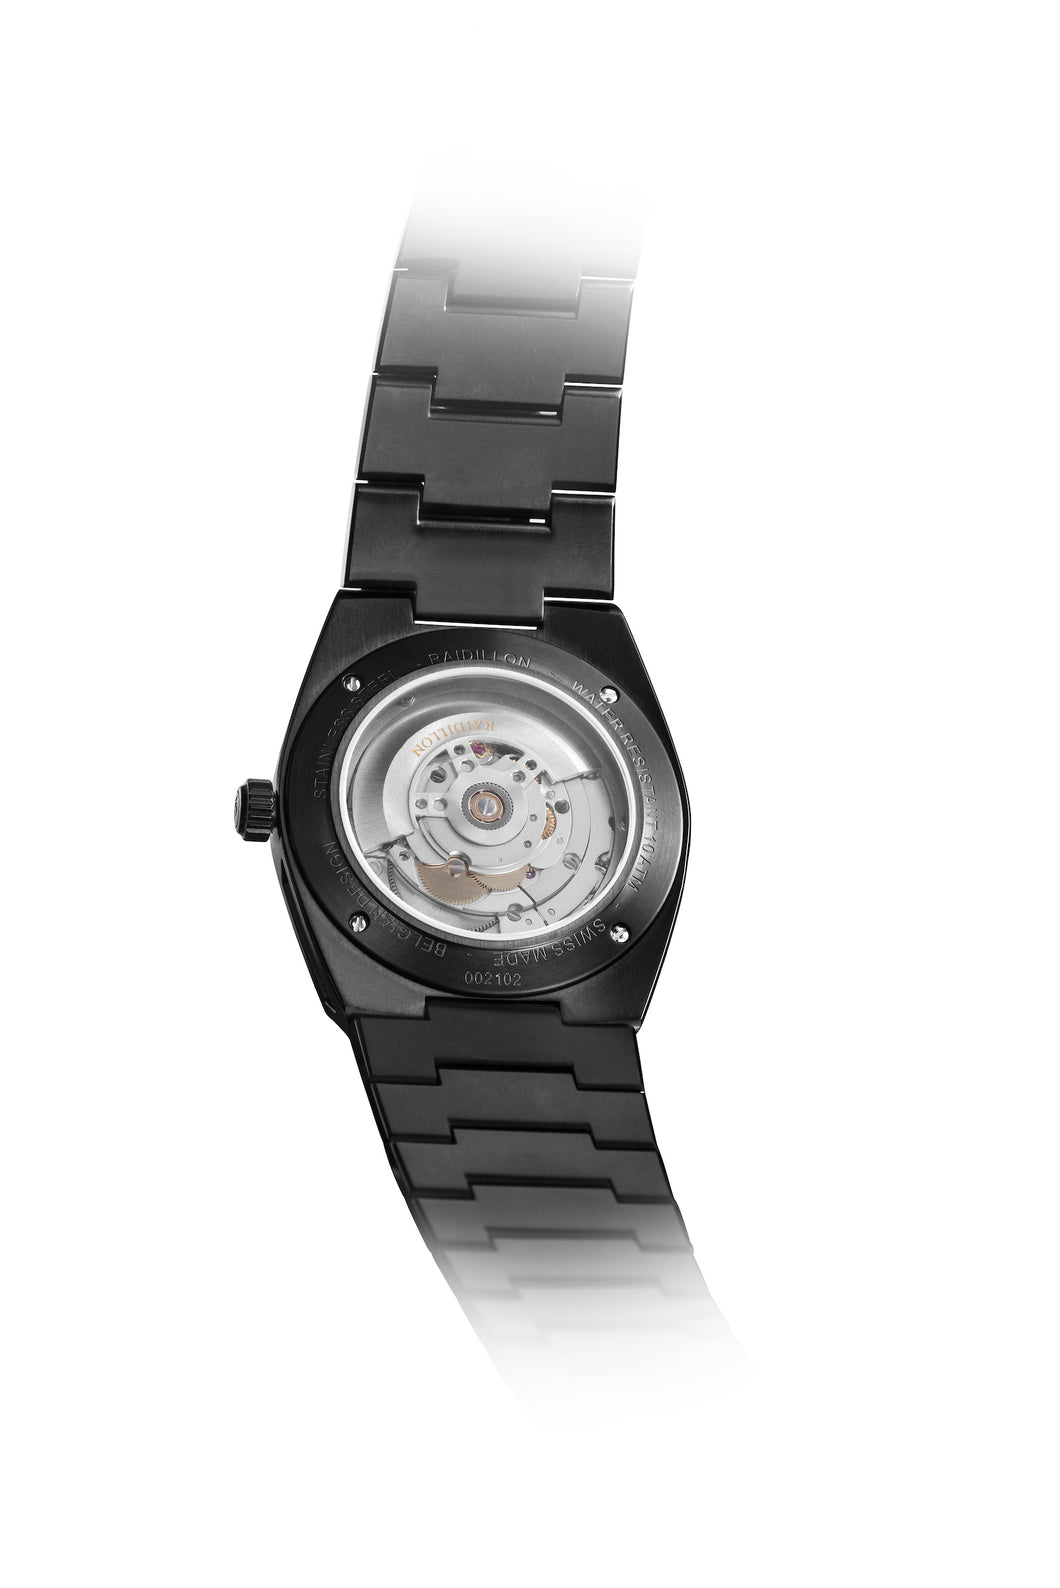 RAIDILLON - Chronograph Watch GT-A-4004 – Raidillon Watches